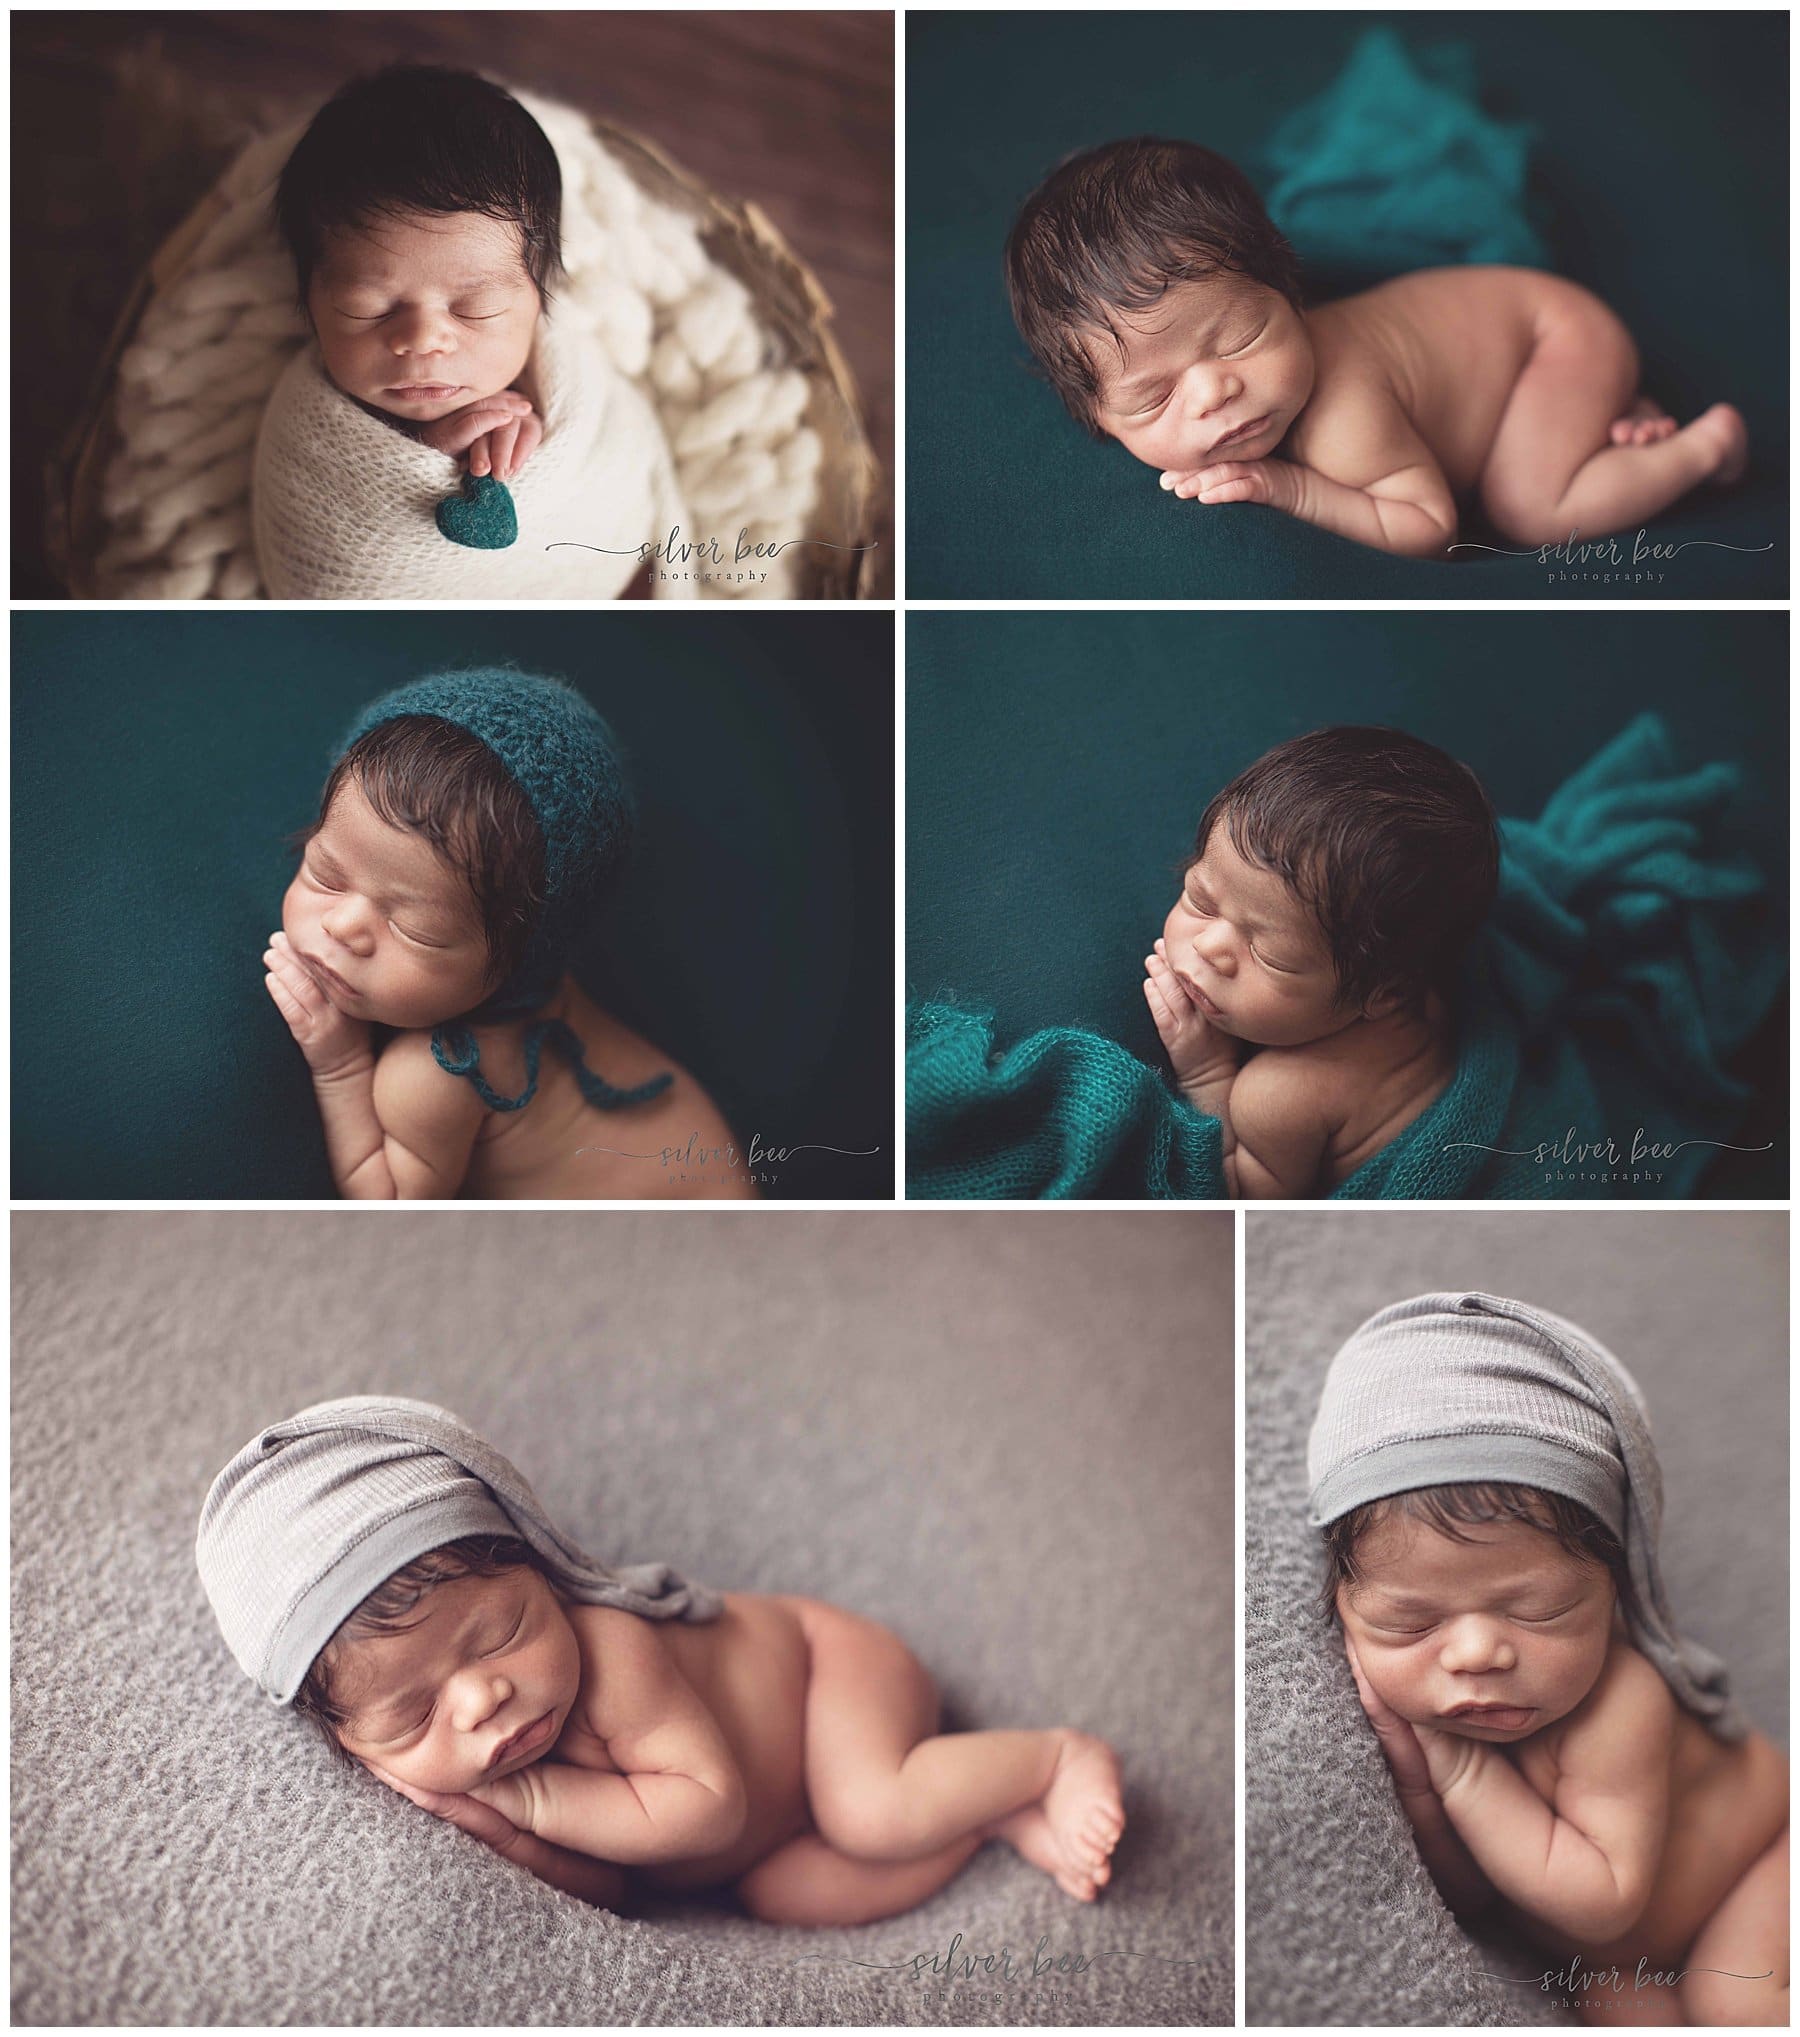 Baby Photo Shoot at Home: Capturing Precious Moments